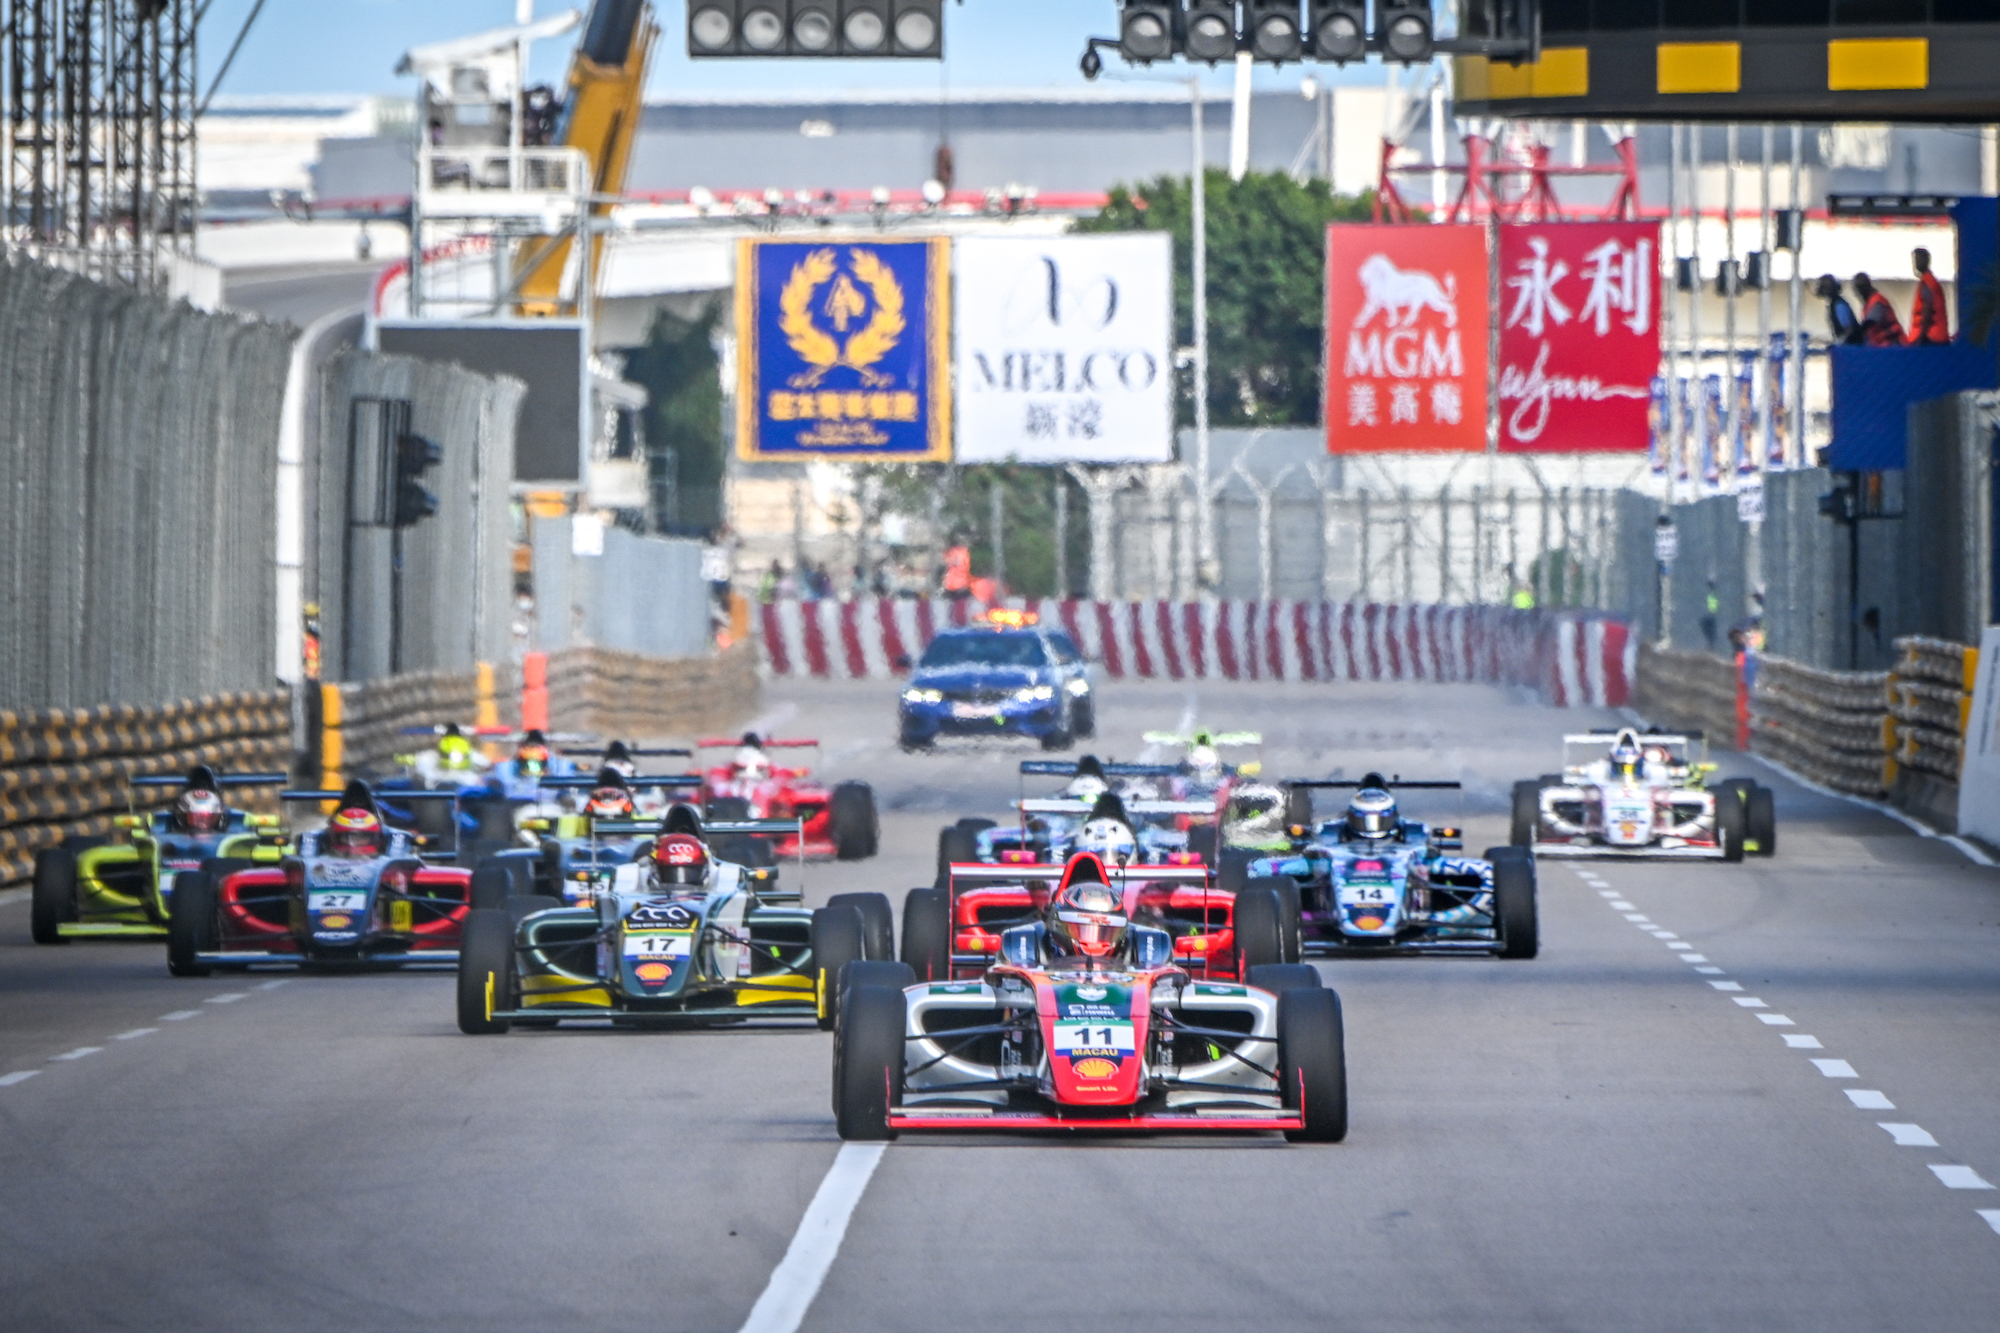 Macau Grand Prix 2021